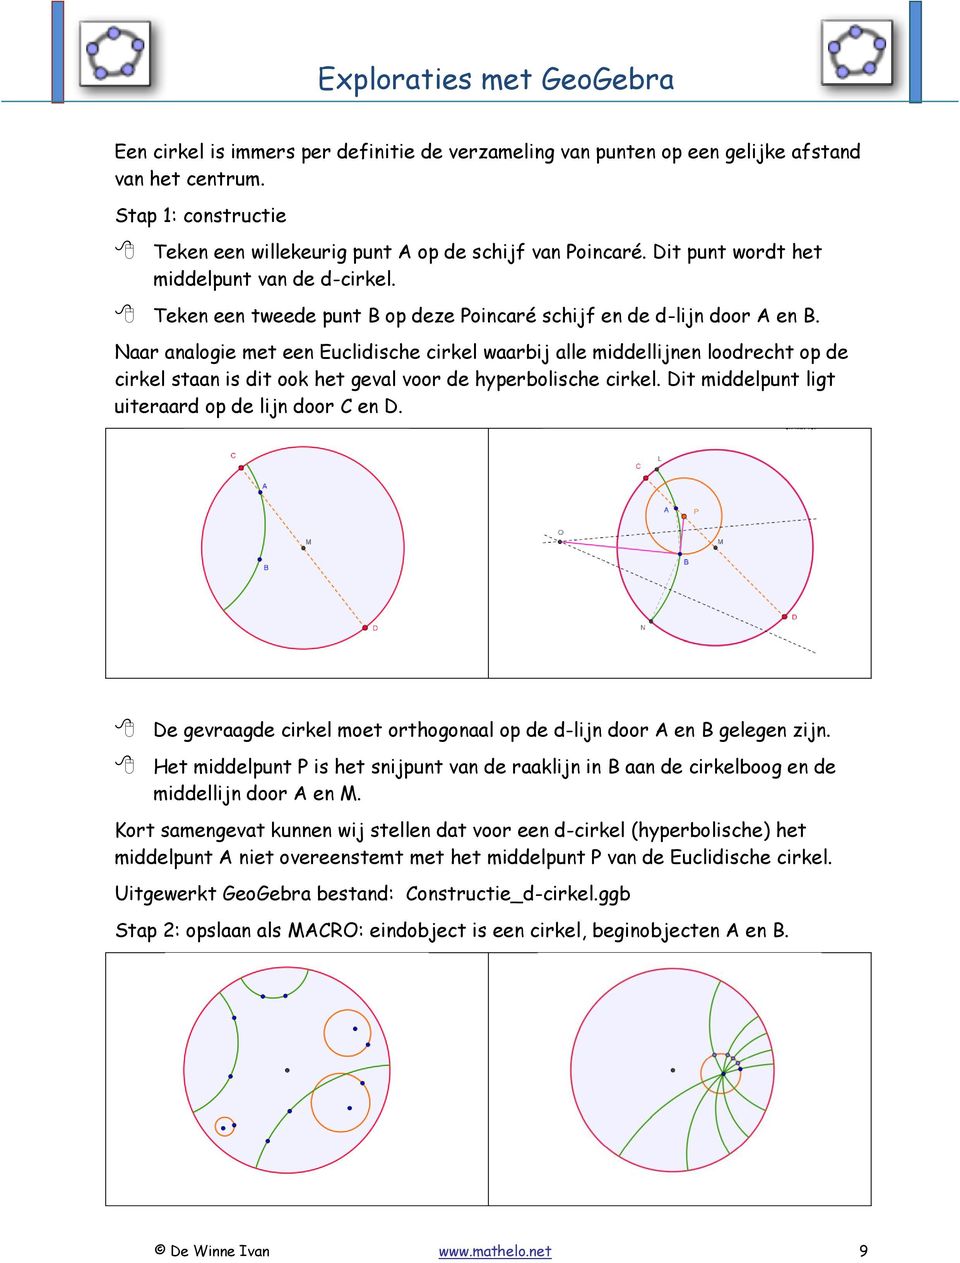 Naar analogie met een Euclidische cirkel waarbij alle middellijnen loodrecht op de cirkel staan is dit ook het geval voor de hyperbolische cirkel. Dit middelpunt ligt uiteraard op de lijn door C en D.